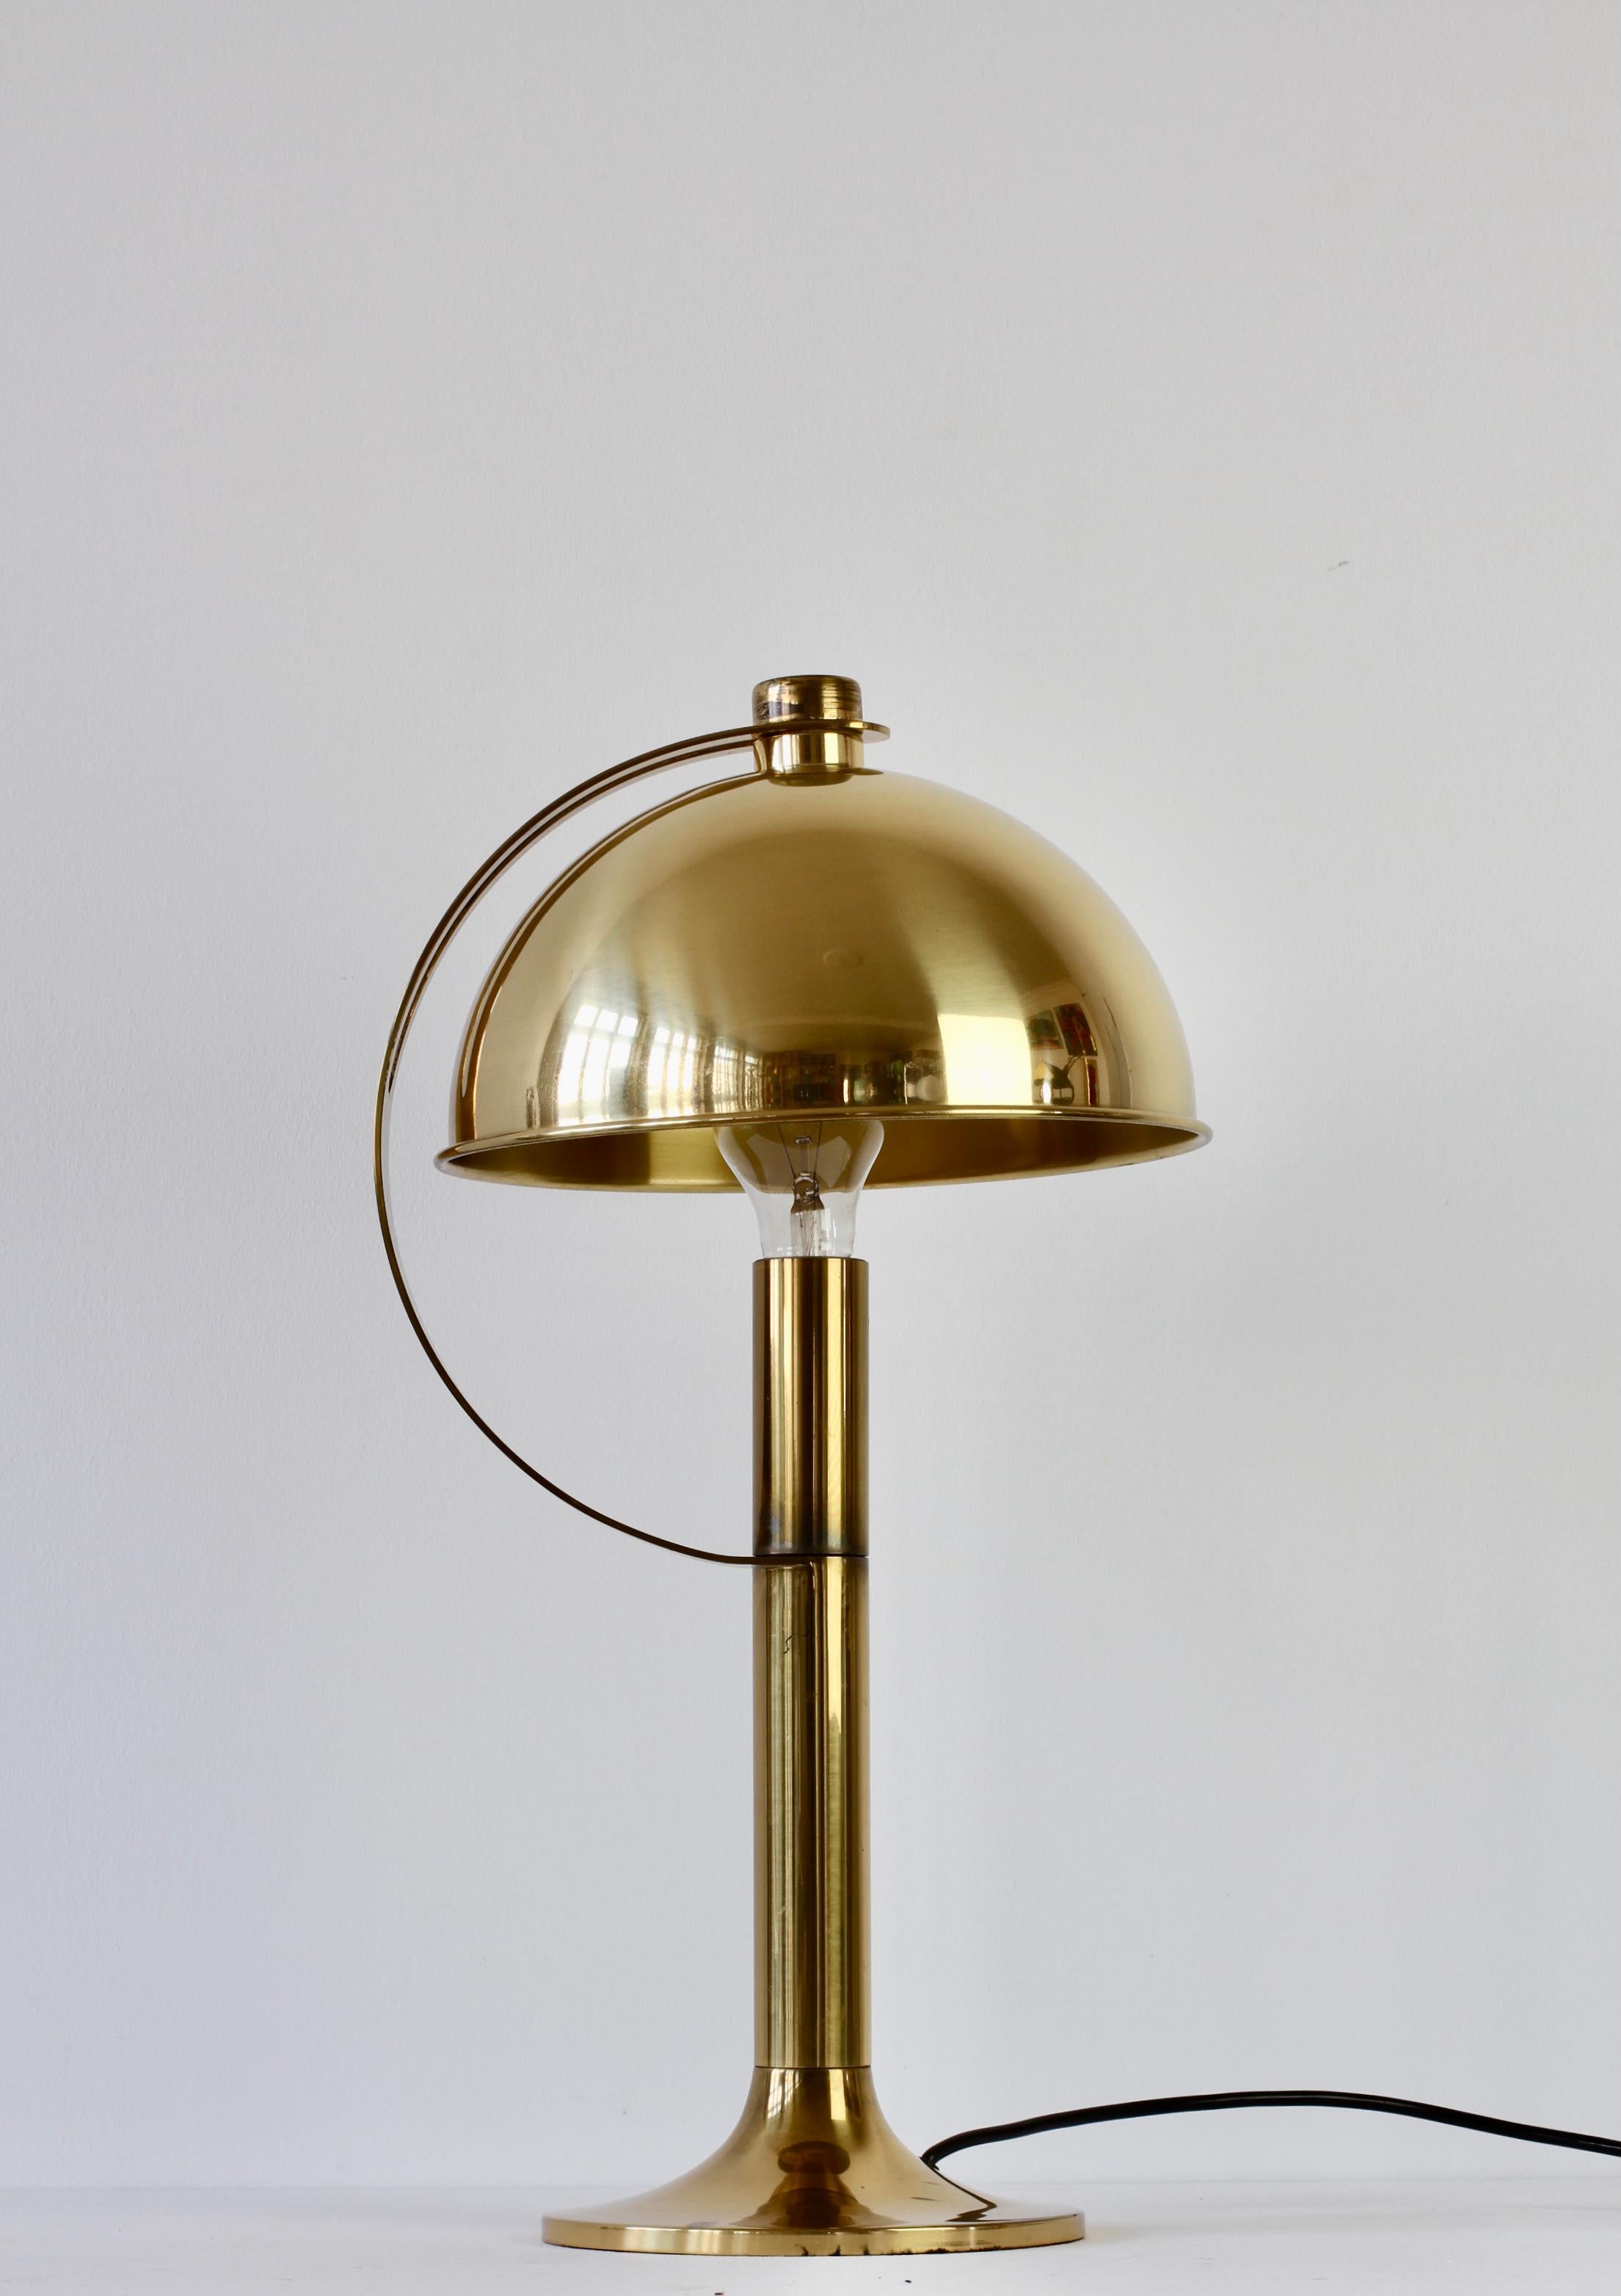 Seltene Mid-Century Modern Tischlampe oder Schreibtischlampe von Florian Schulz aus Deutschland um 1970. Die polierten Messingbeschläge (jetzt mit altersbedingter Patina) und der verstellbare runde Messingschirm machen diese Leuchte zu einer